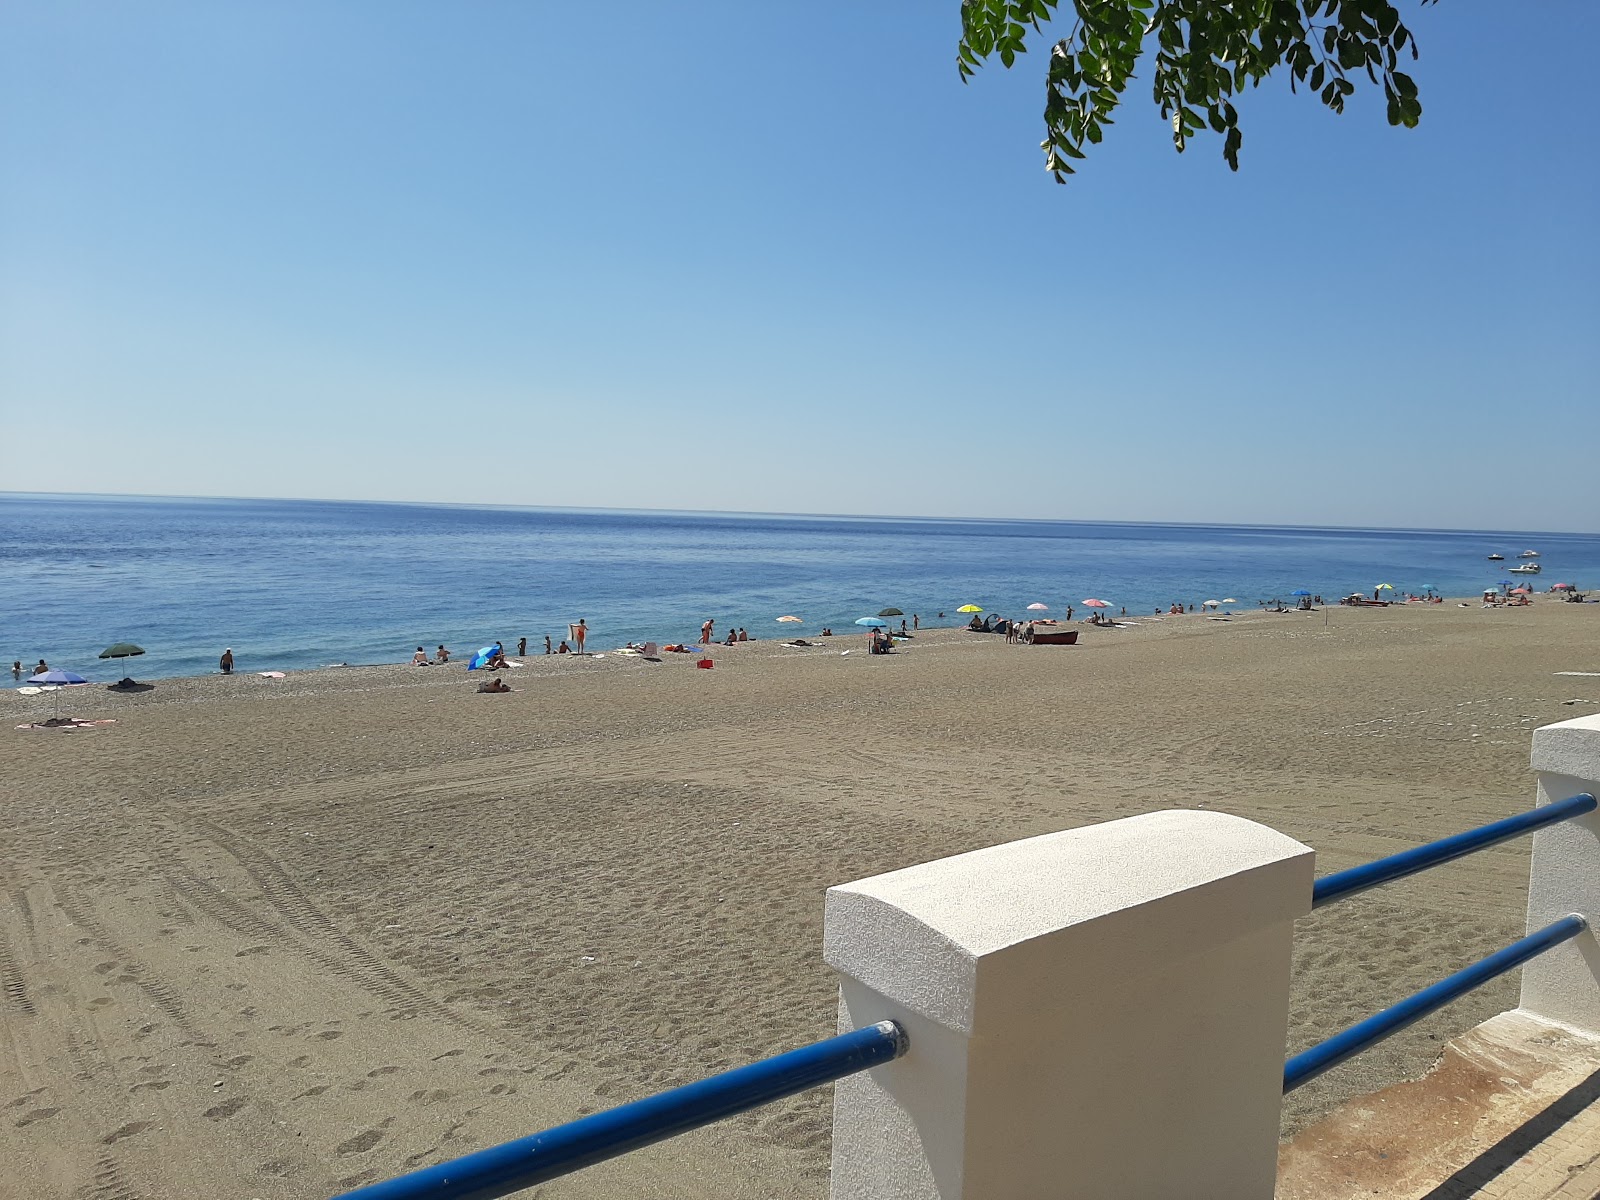 Zdjęcie Ali Terme beach i osada